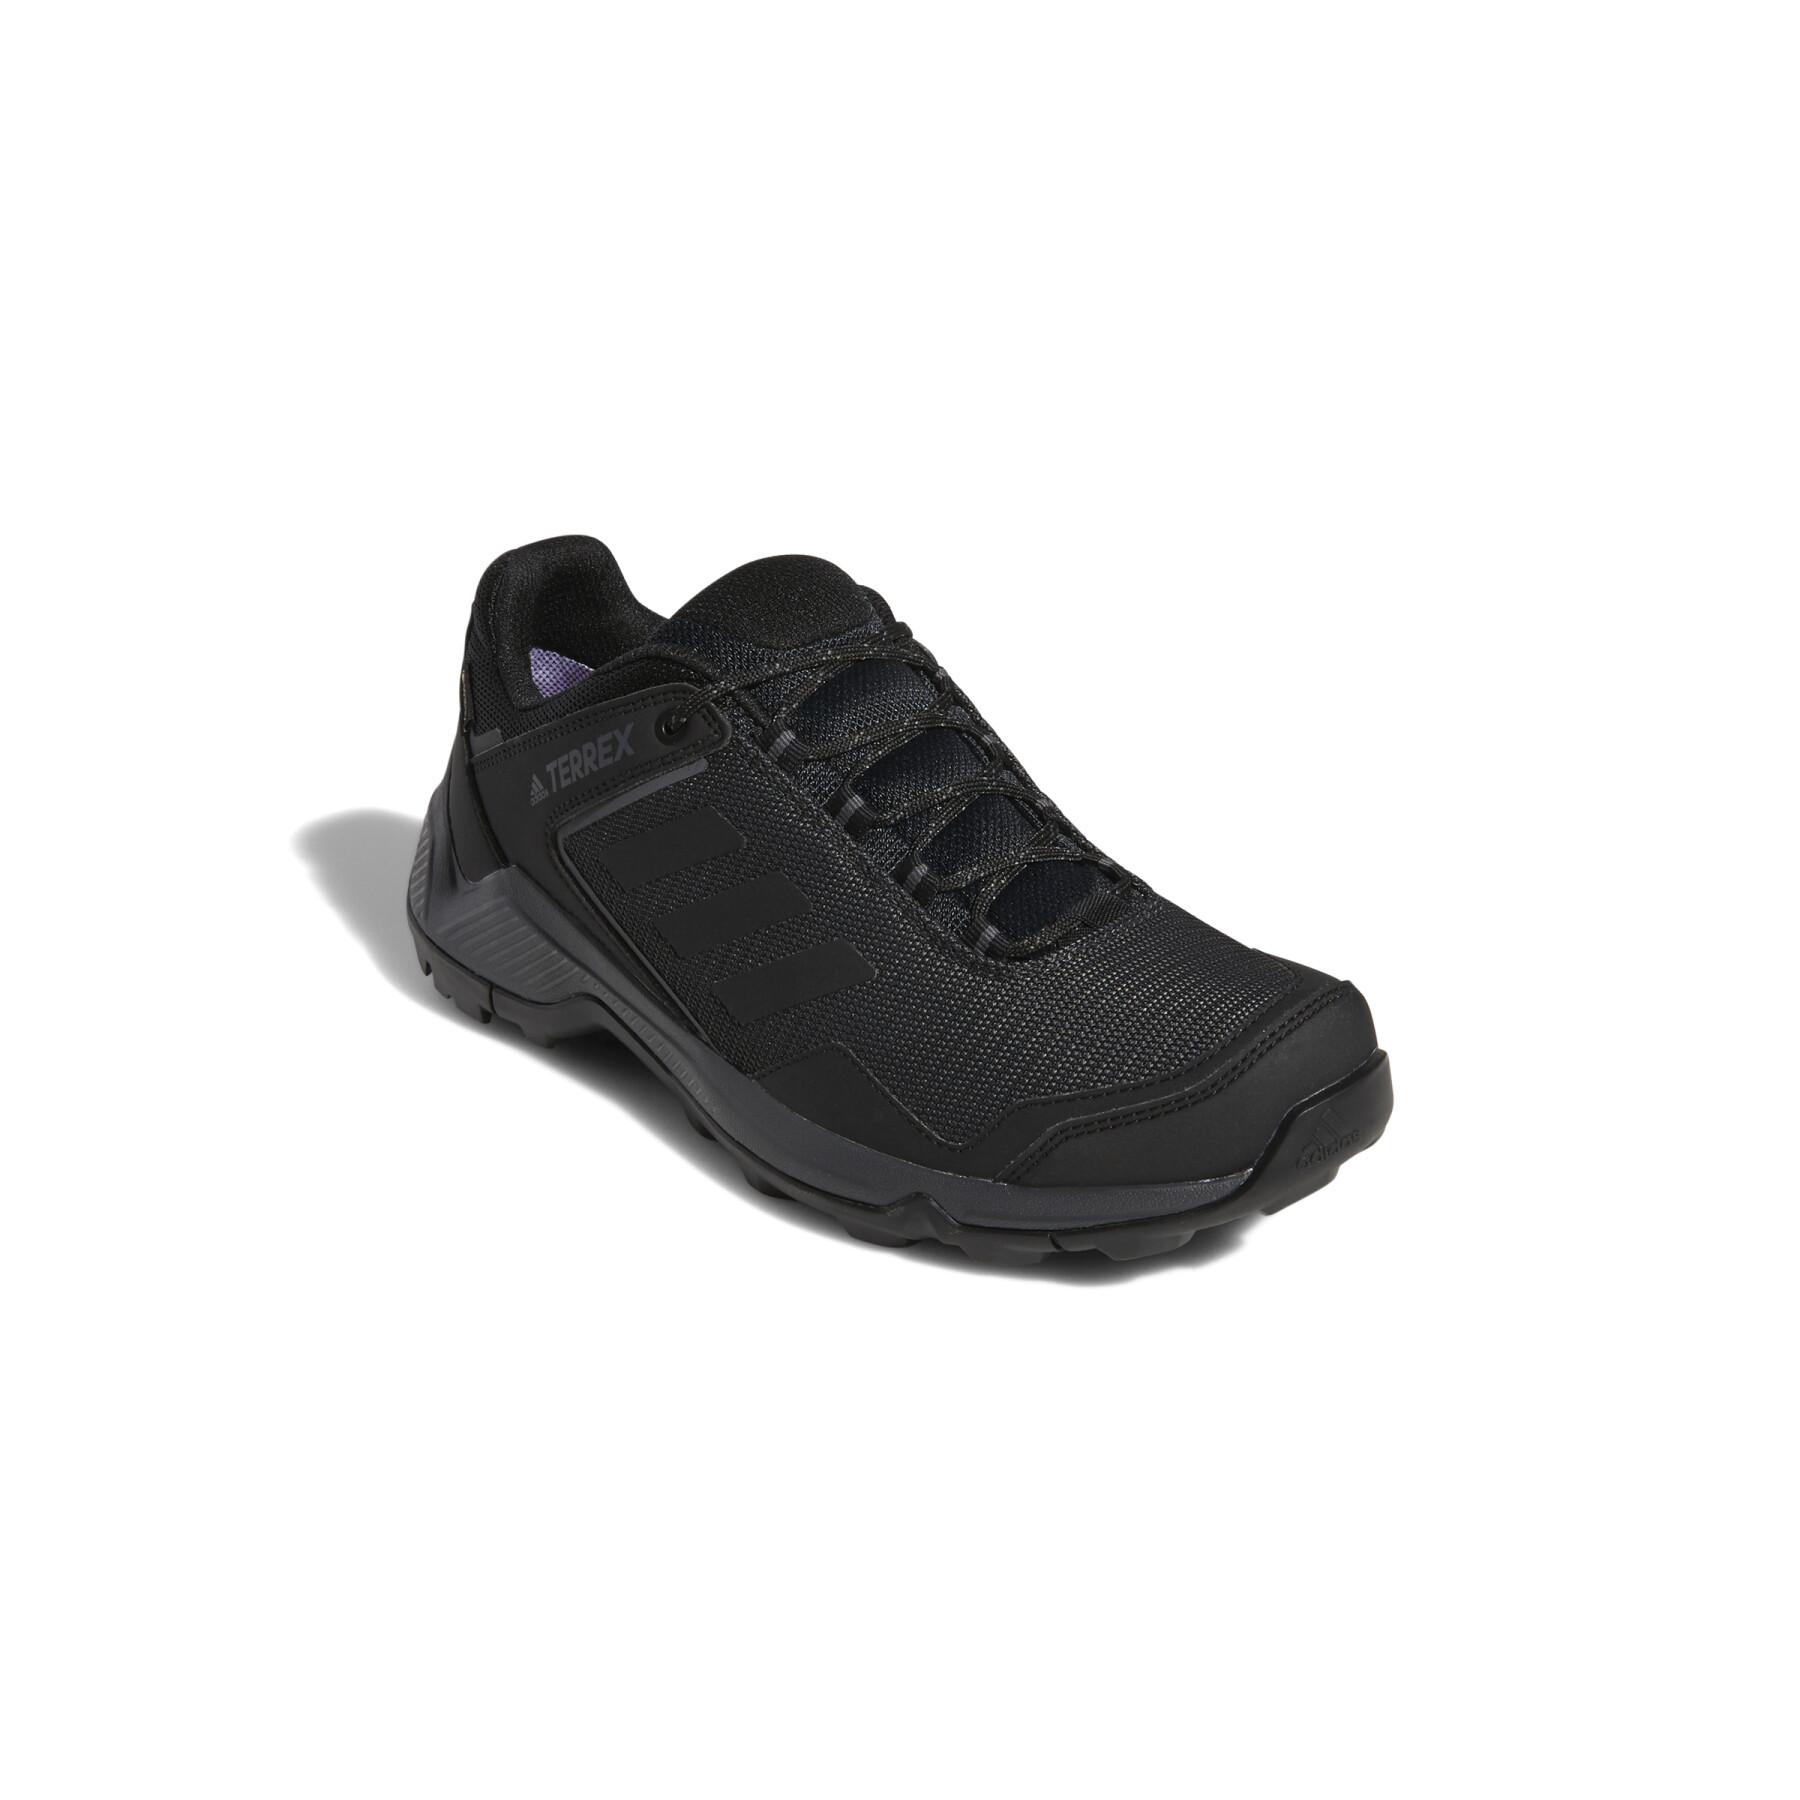 Trail shoes adidas Terrex Eastrail GTX